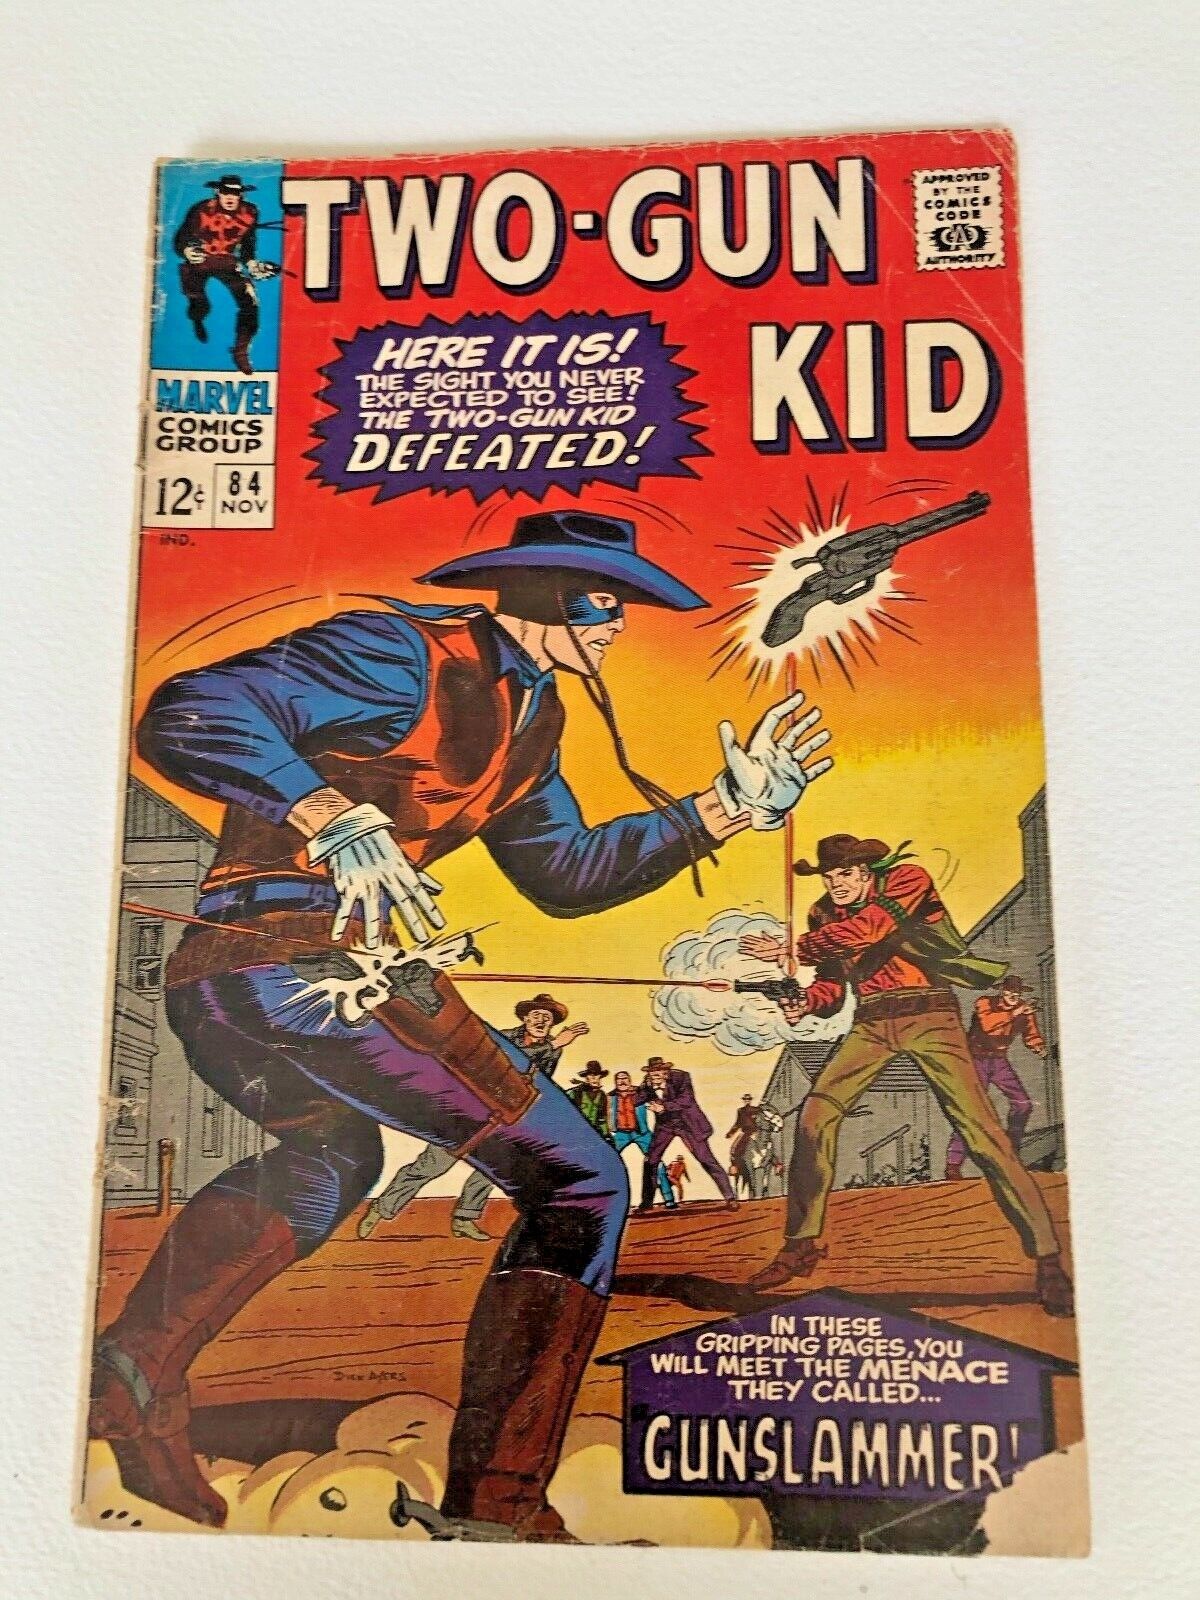 Vintage TWO-GUN KID # 84 Nov 1966 Stan Lee  not graded 